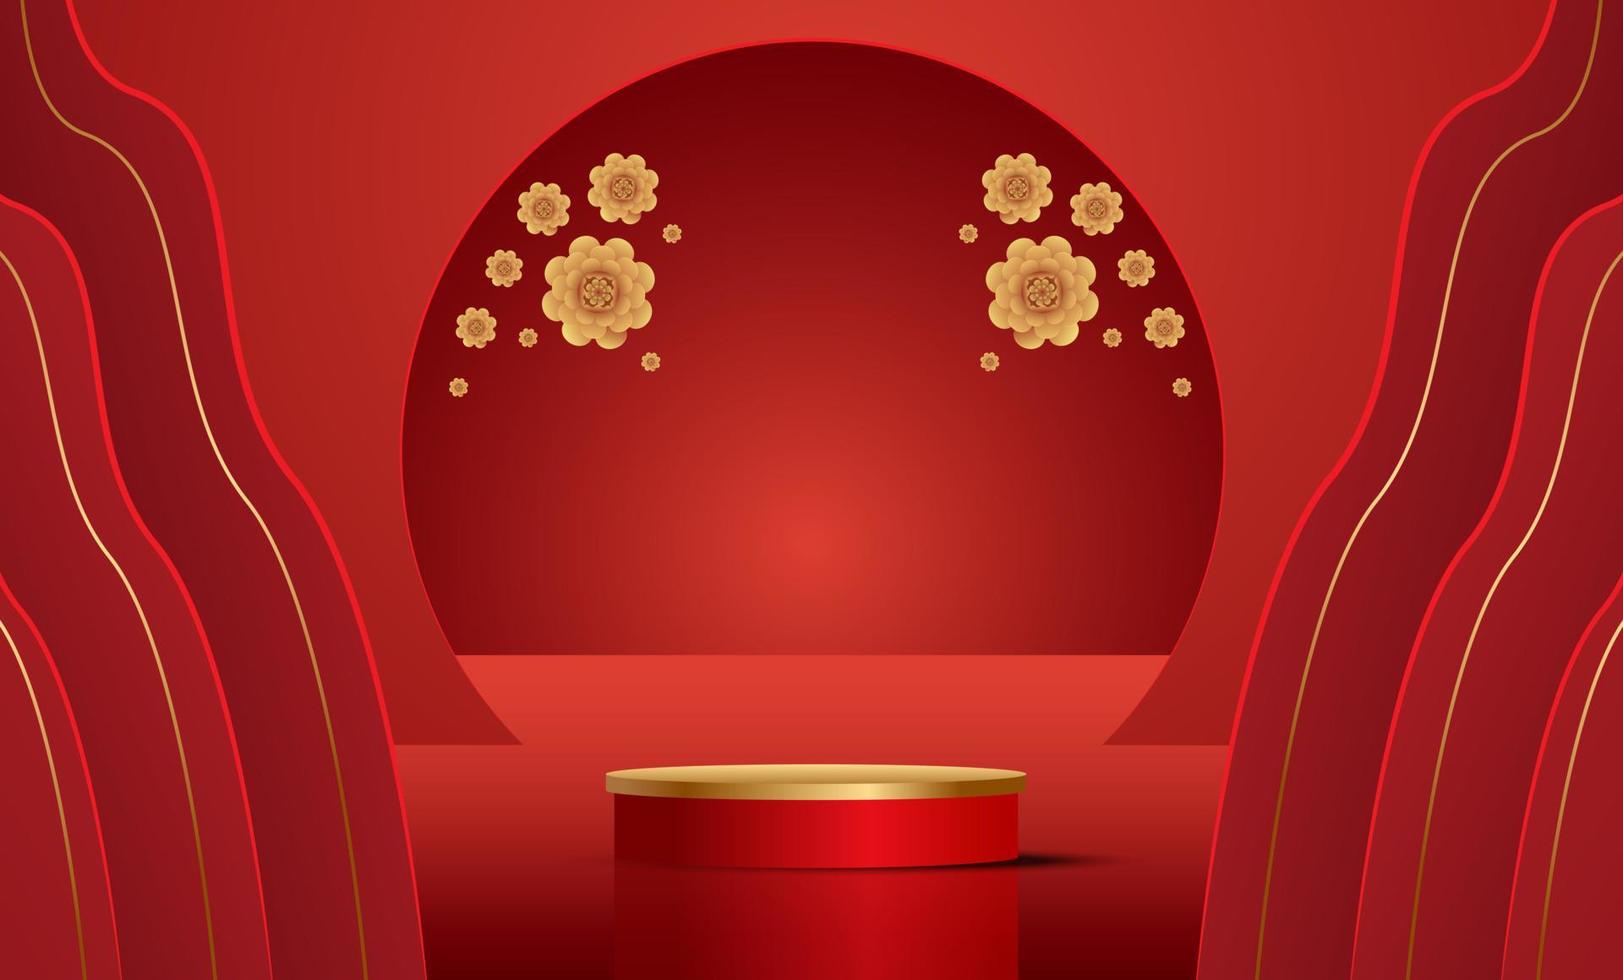 pódio e fundo para o ano novo chinês, festivais chineses, festival do meio do outono, flores e elementos asiáticos no fundo. vetor